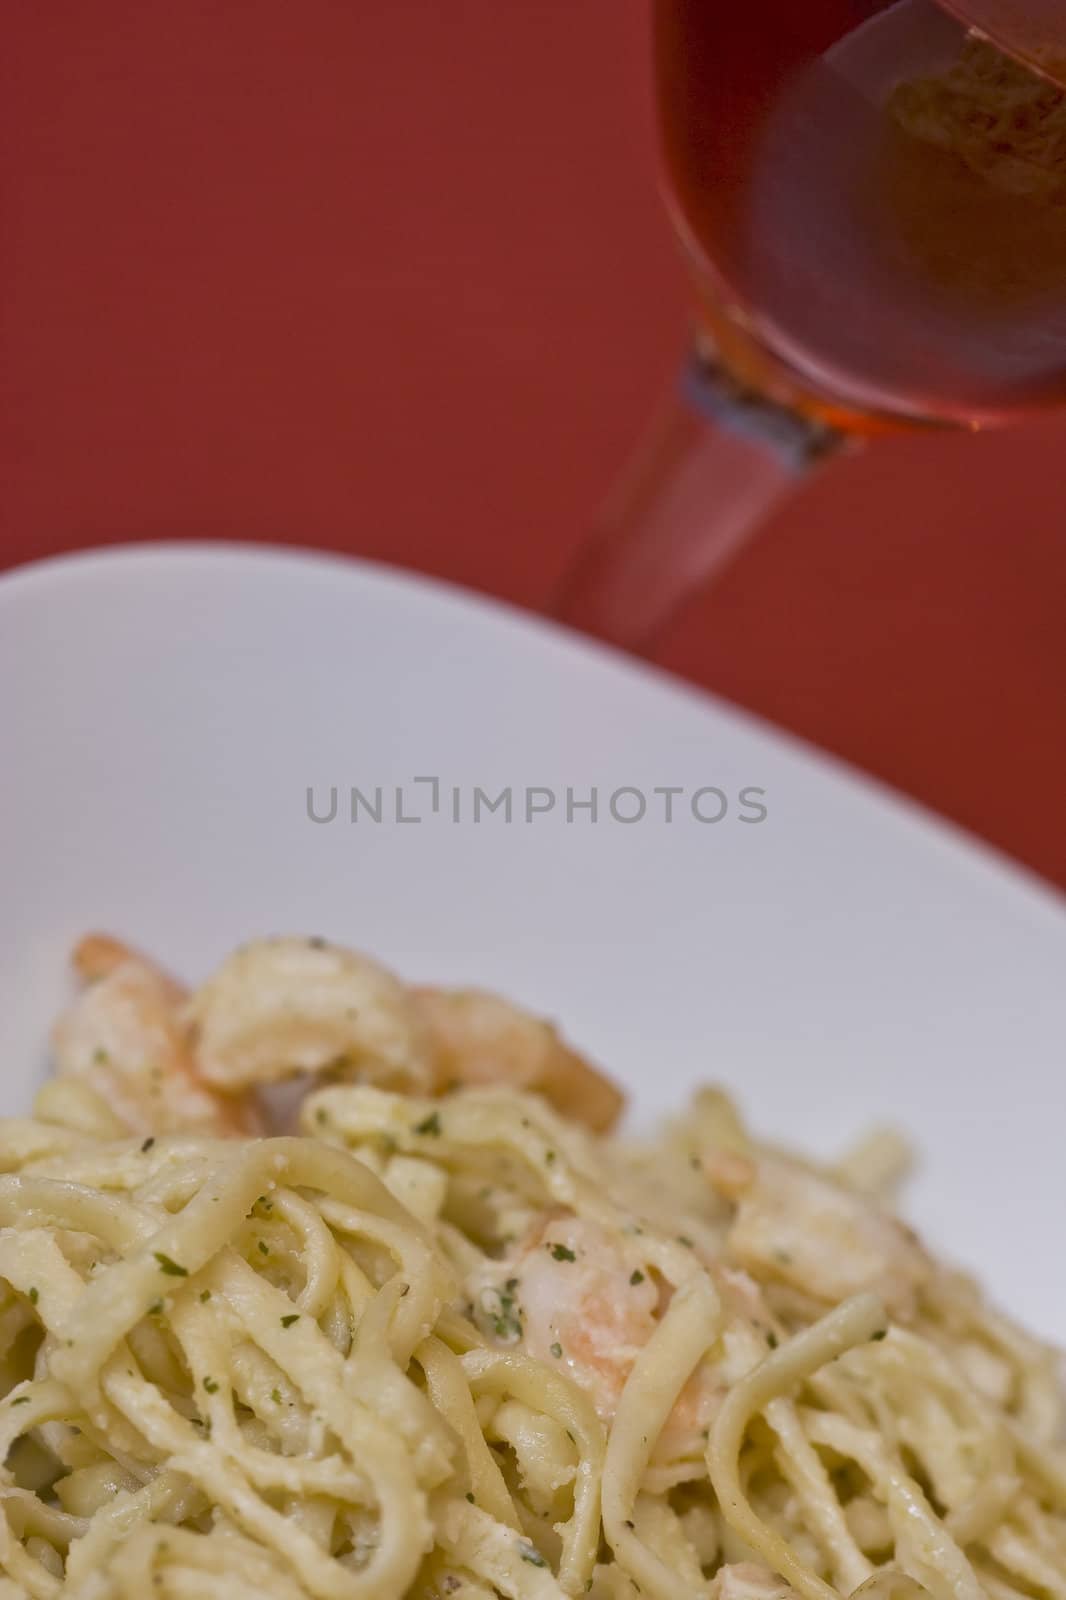 white plate full of shrimp pasta seasoned and hot